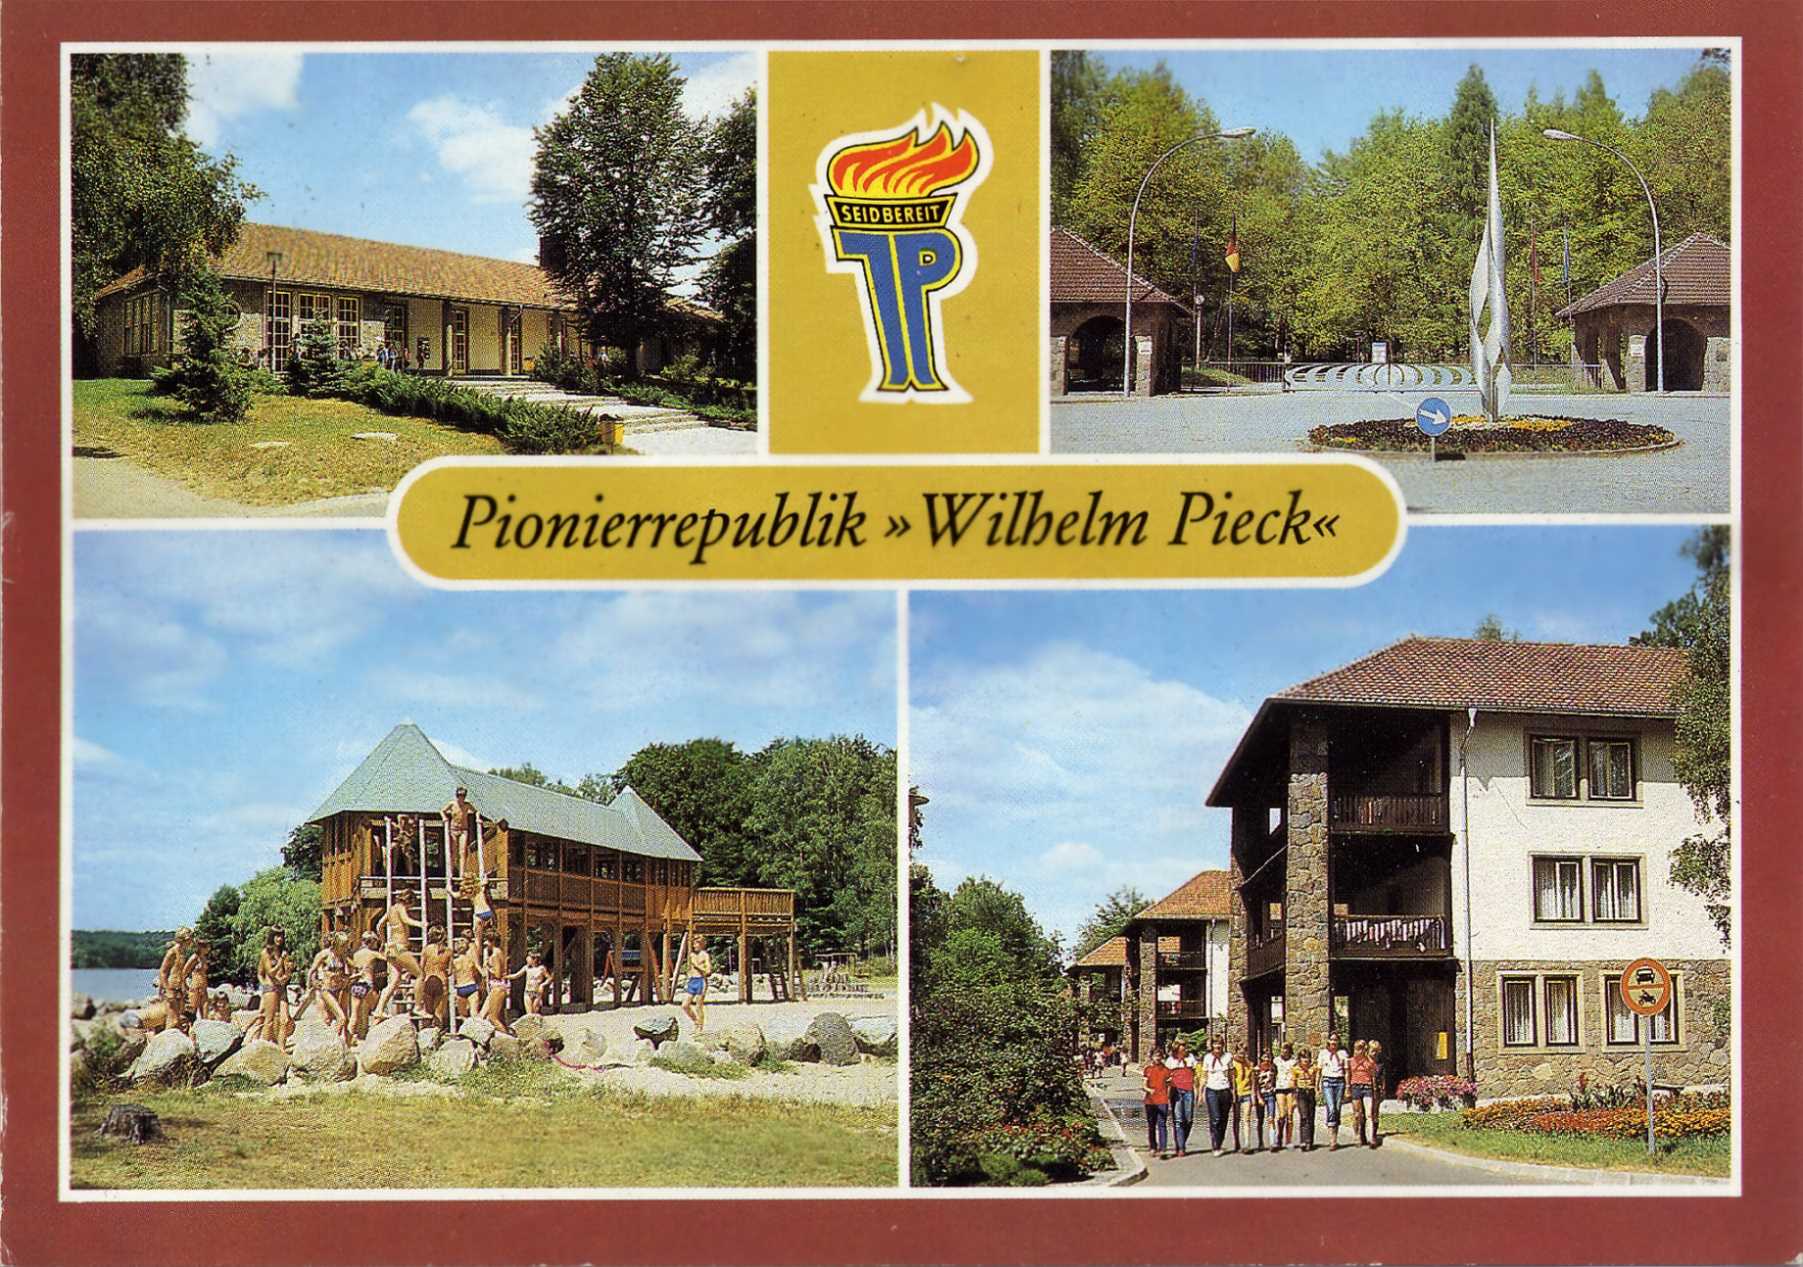 Postkarte der Pionierrepublik Wilhelm Pieck, einem 1952 bei Altenhof am Ufer des Werbellinsees erffneten sozialistischen Schullandheim und Ferienlager. (Repro: Eduard Stenger))